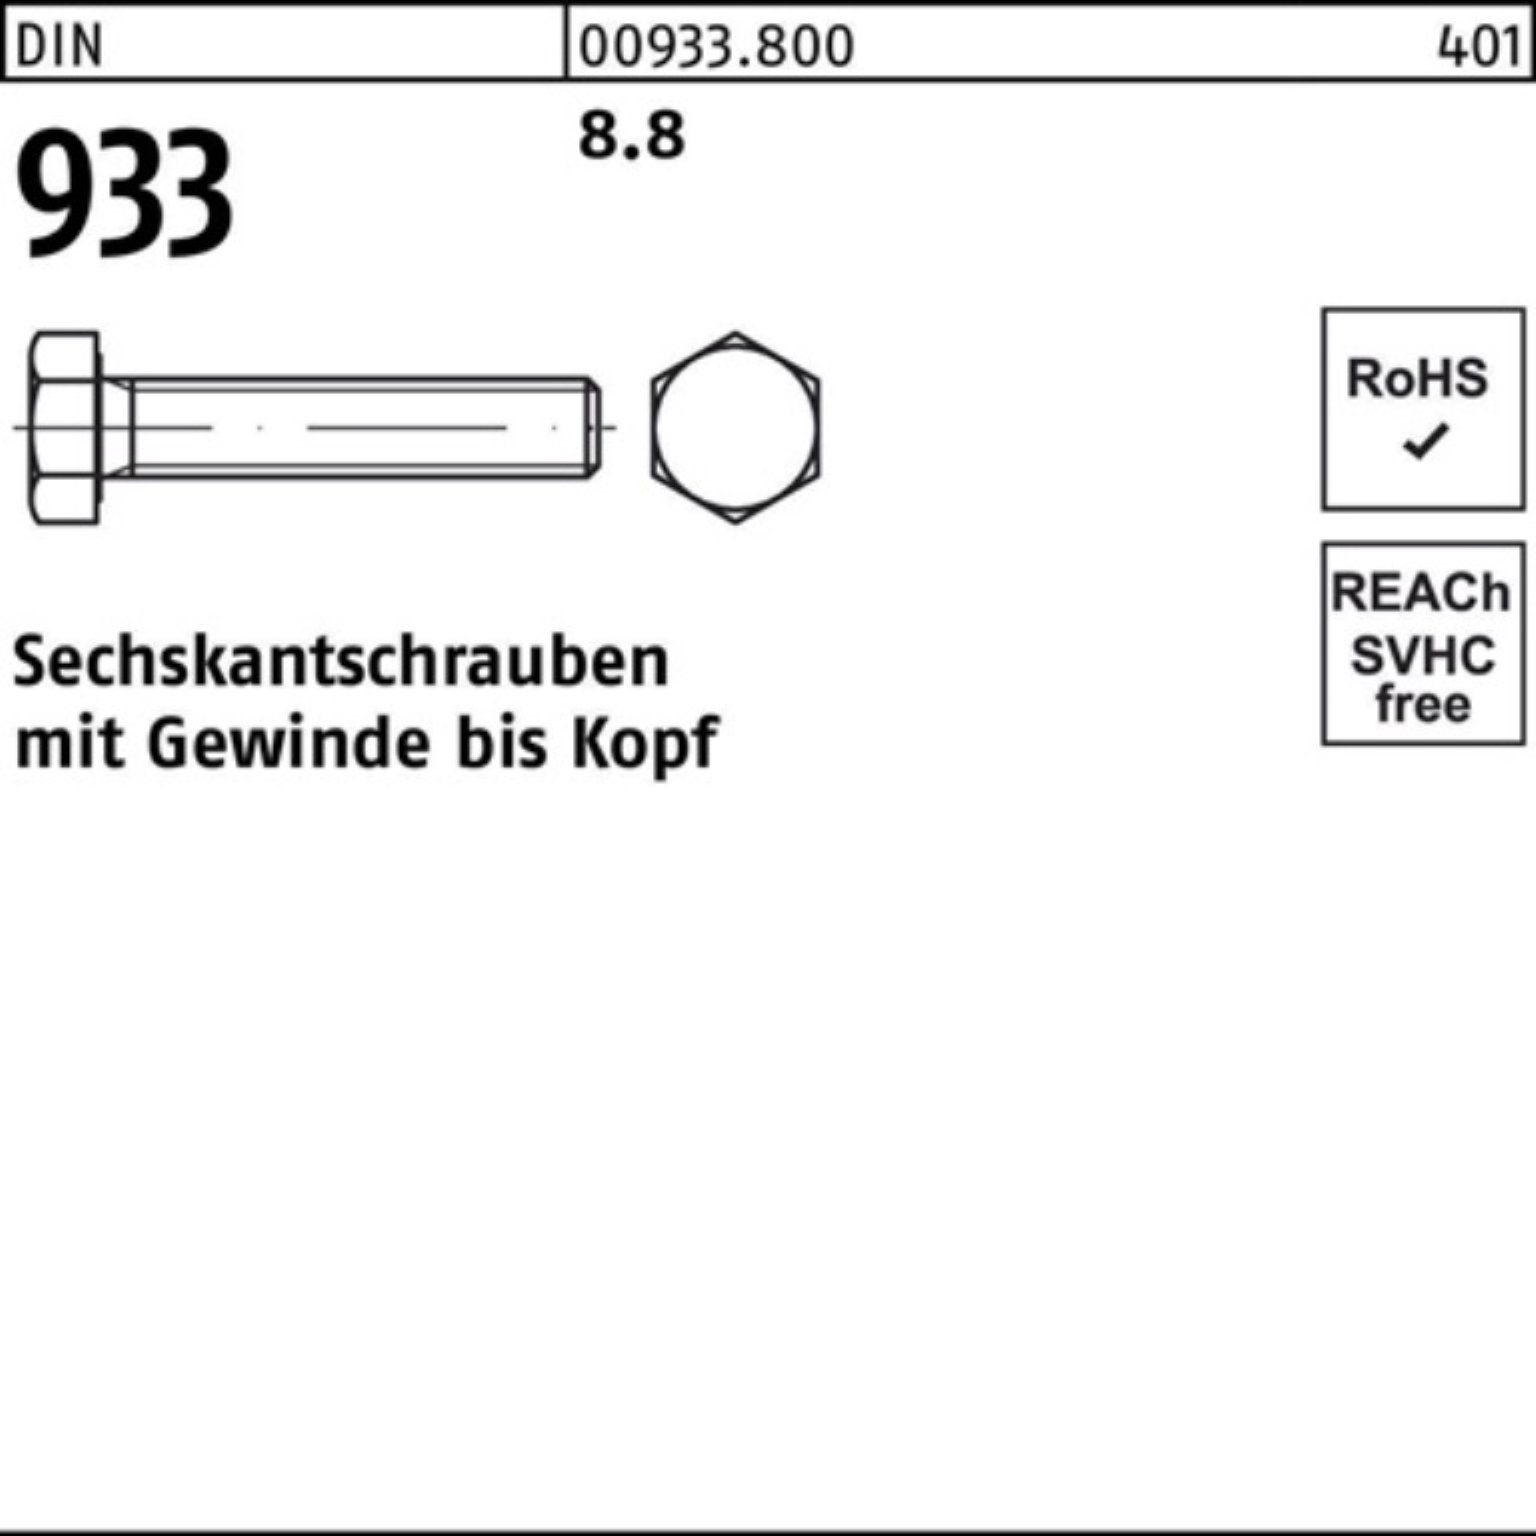 Reyher Sechskantschraube 933 Sechskantschraube M5x 100 DIN VG 933 200 DIN 8.8 200er Pack Stück